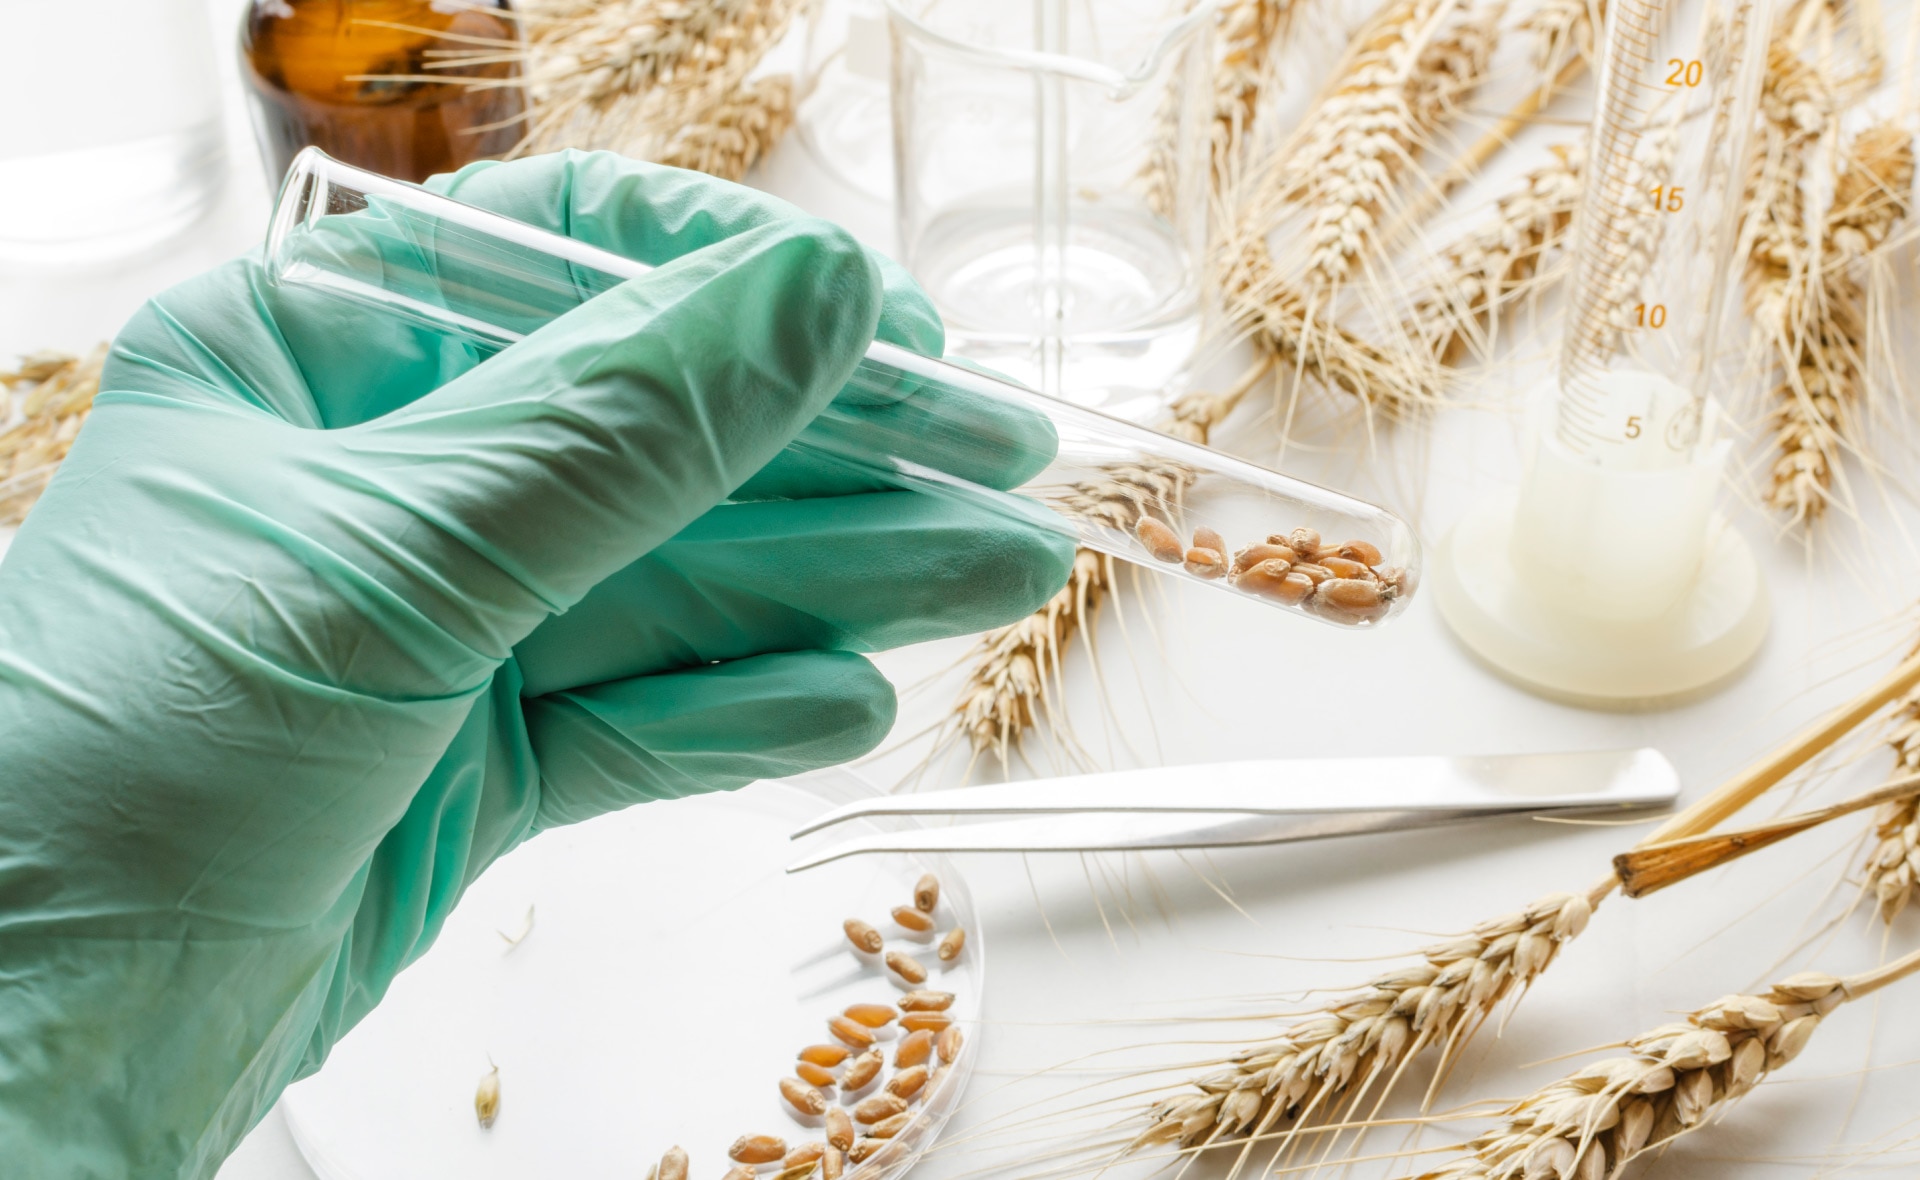 biotecnología-alimentaria-innovacion-cocina-alimentos-sostenibilidad